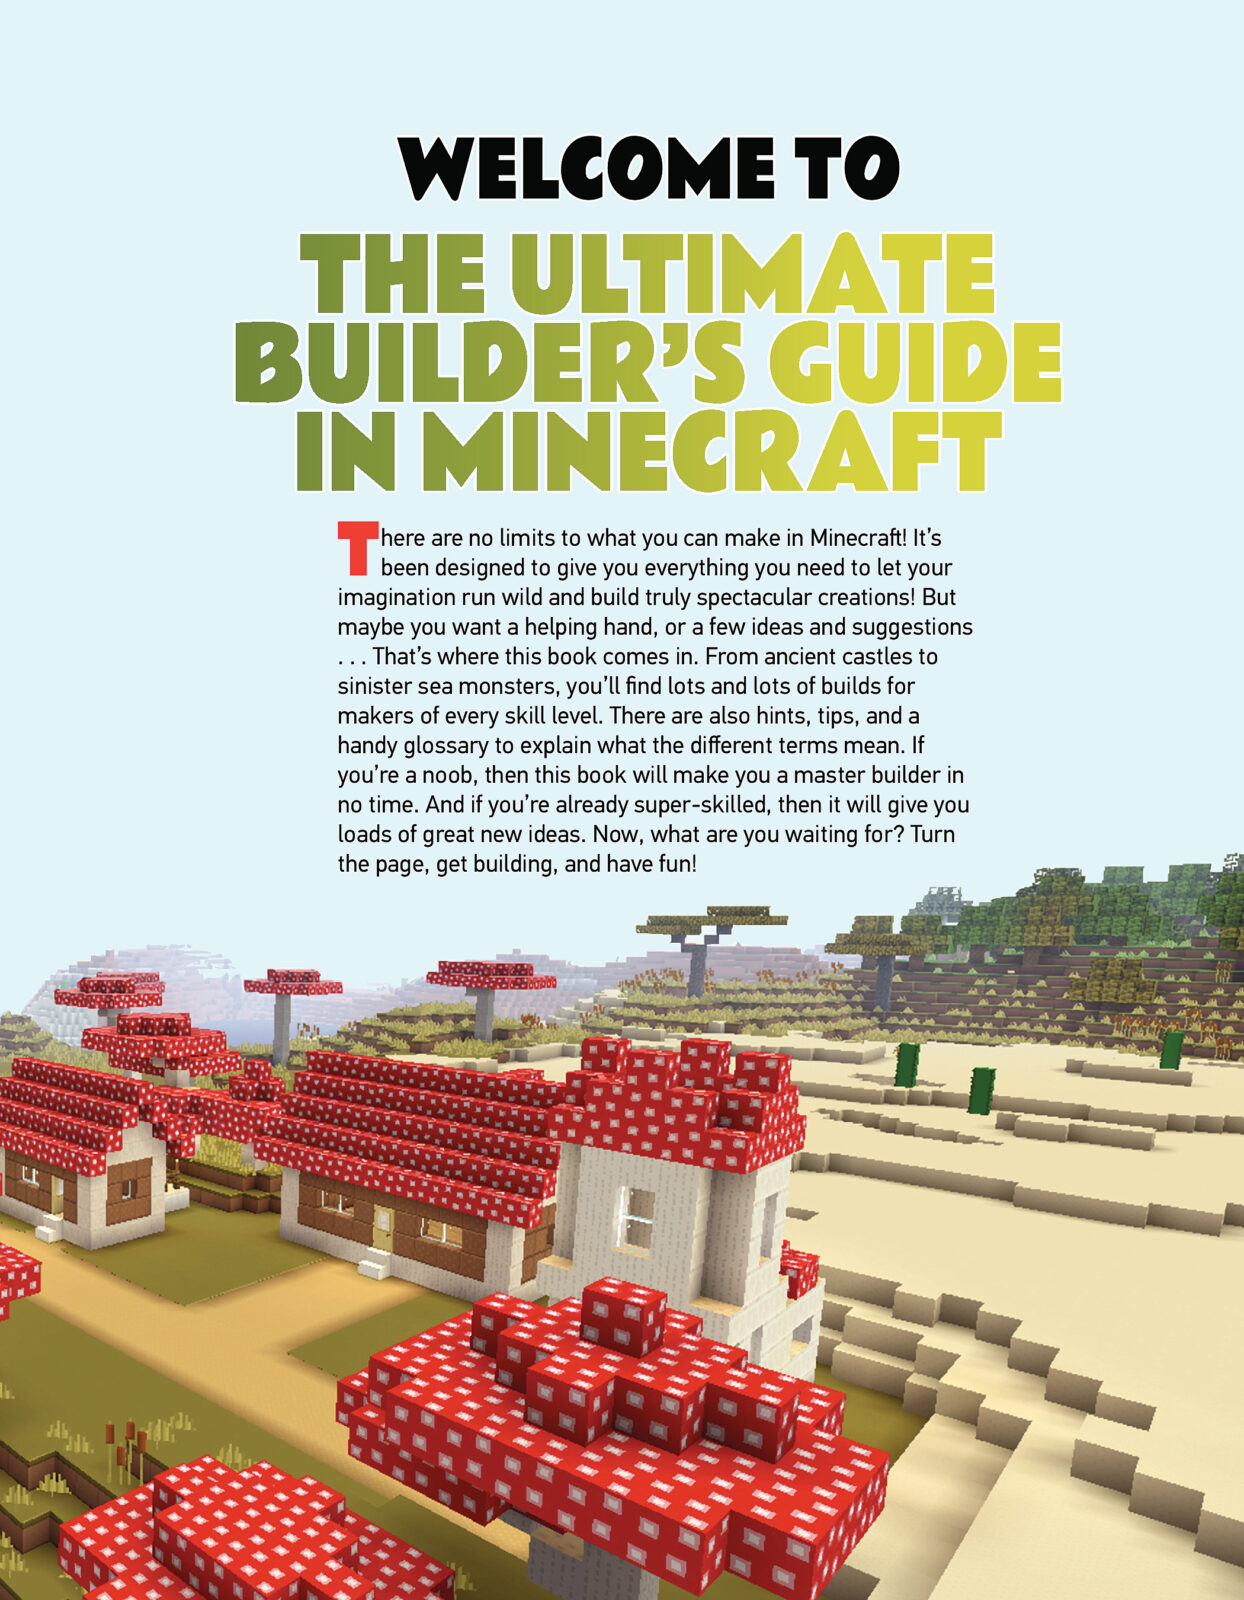 Minecraft - Le guide du builder Pas Cher